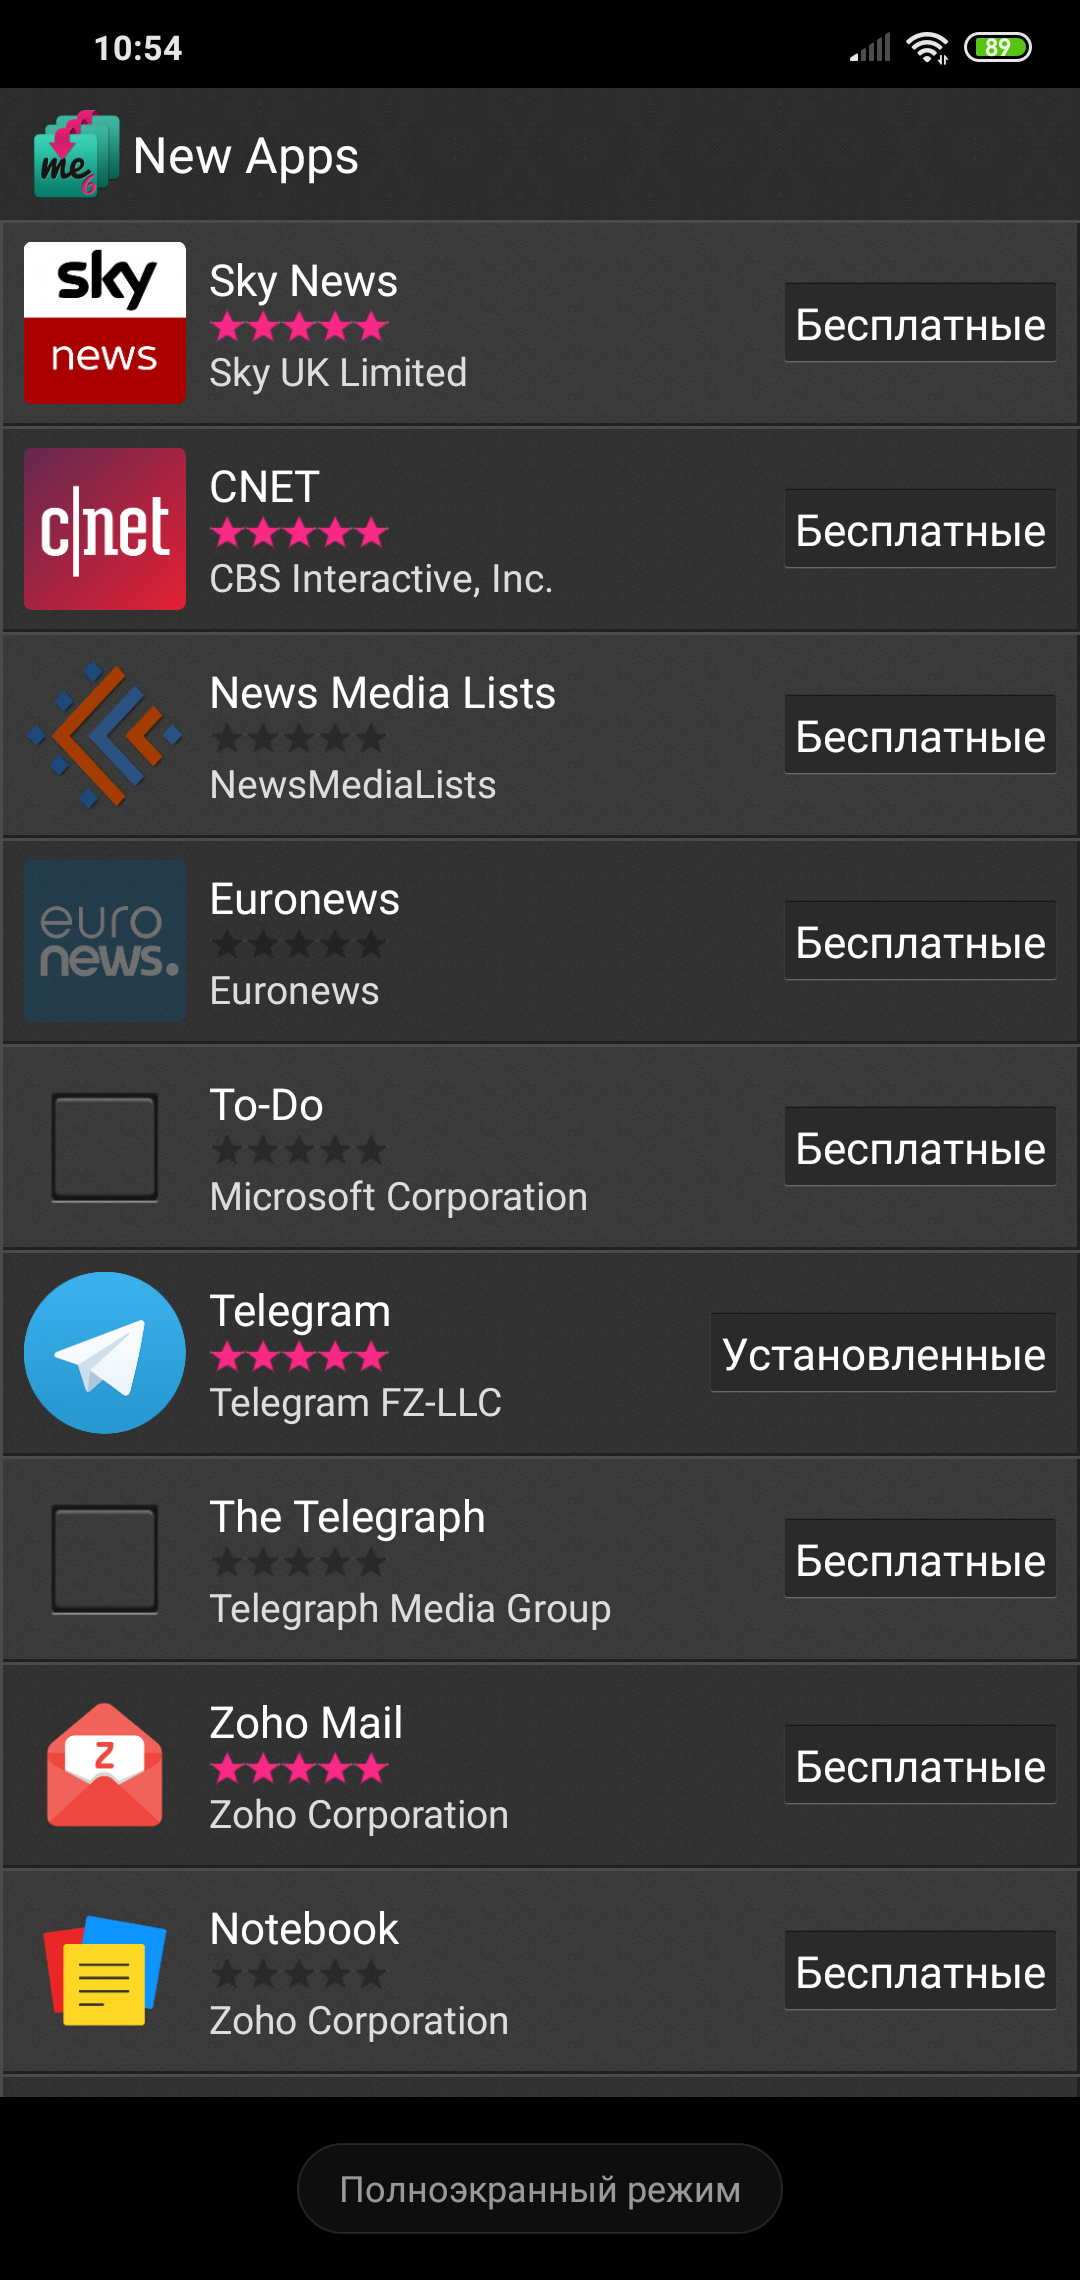 Установить телеграмм на андроид бесплатно на русском языке полную версию фото 115